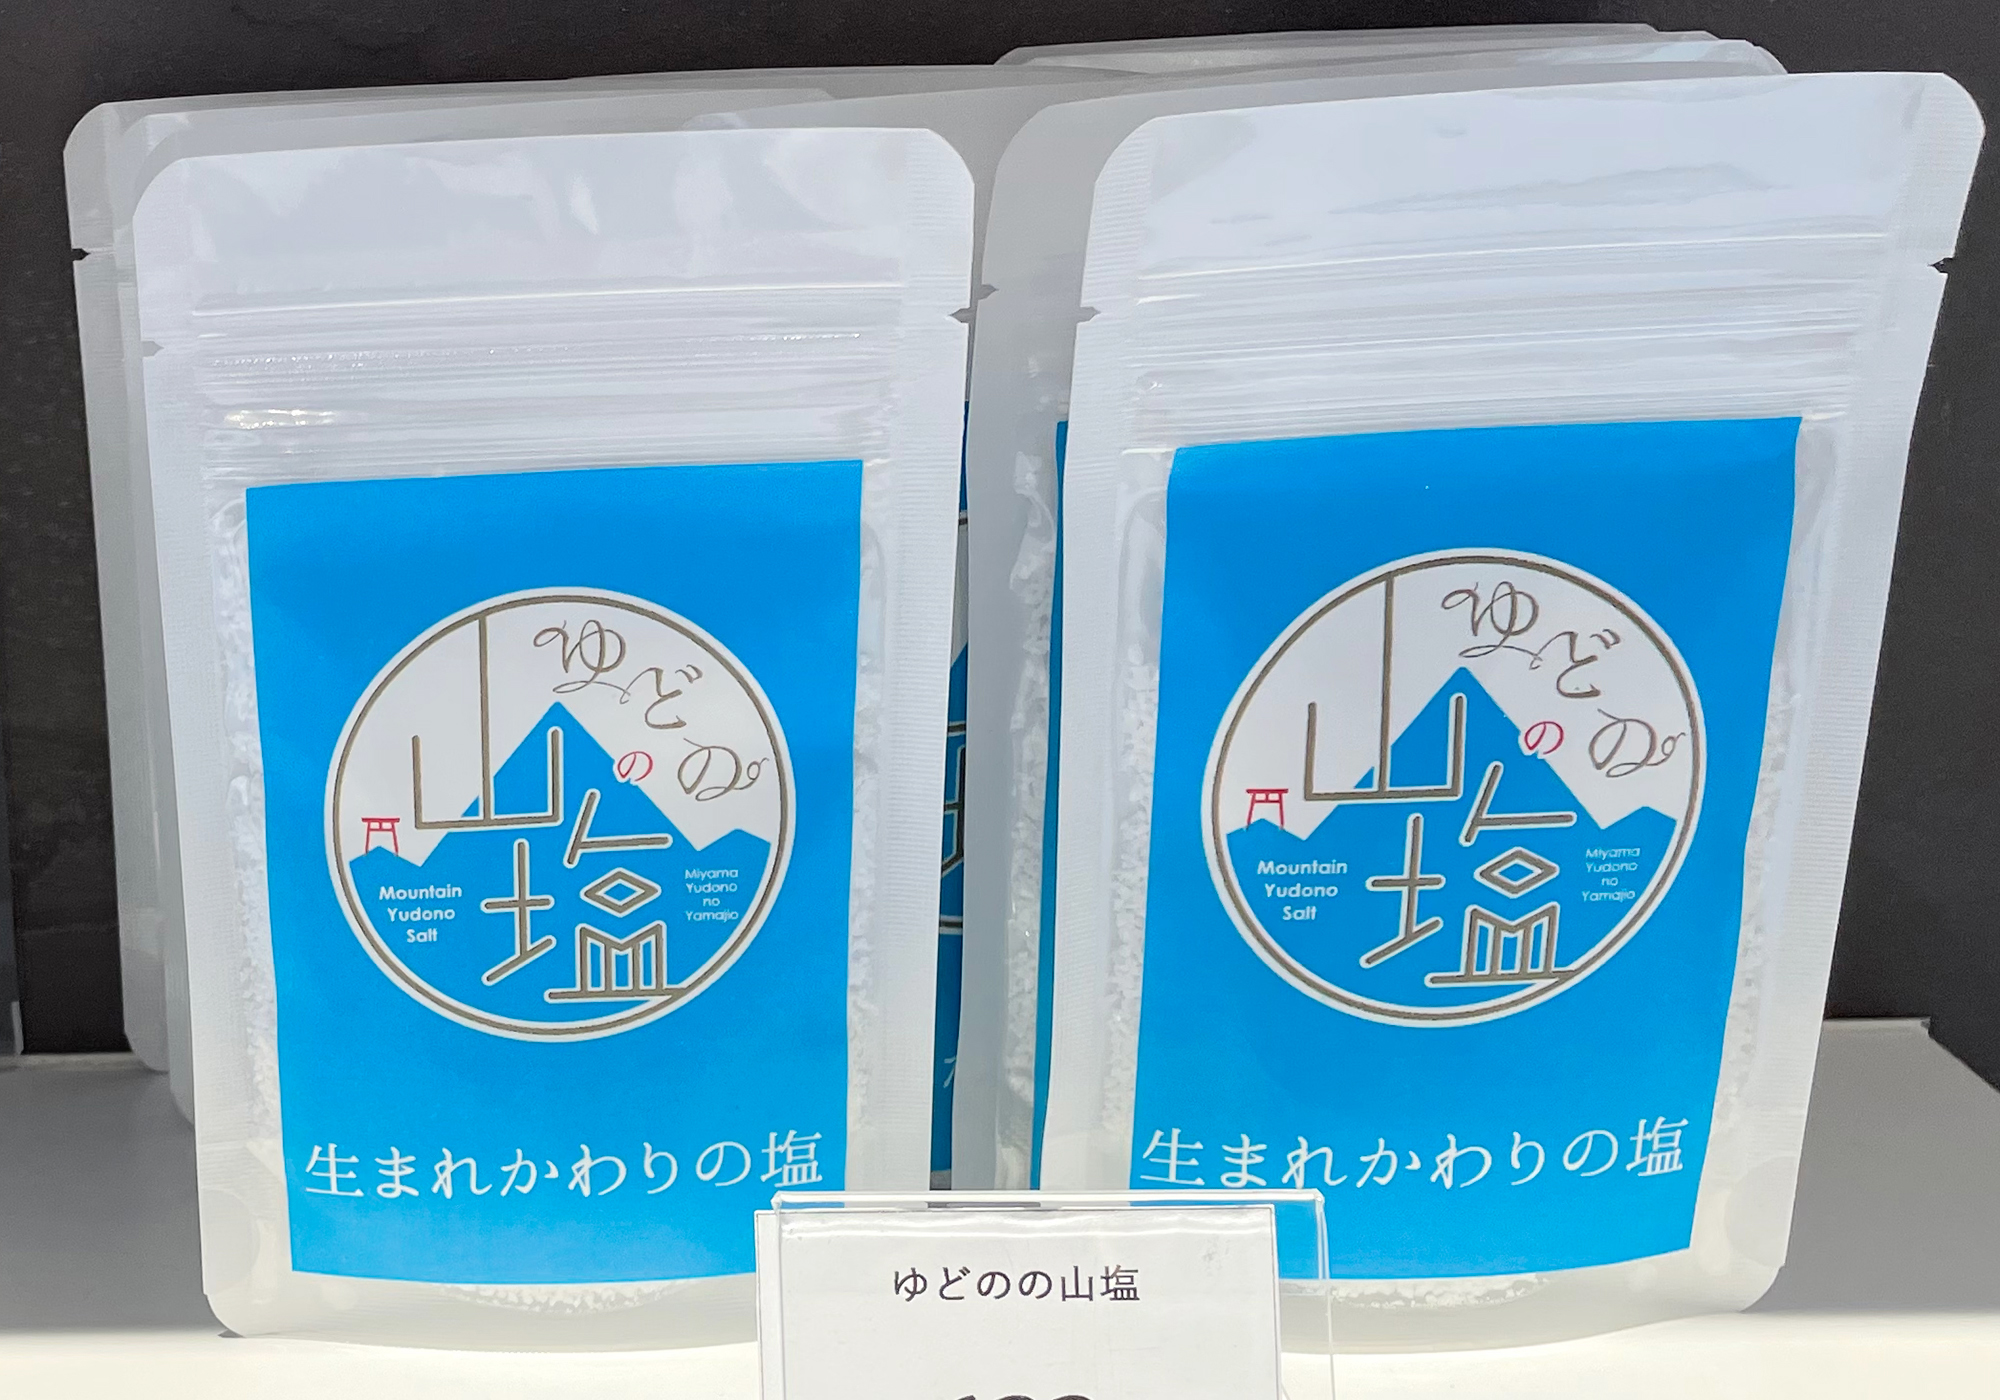 Yudono mountain salt